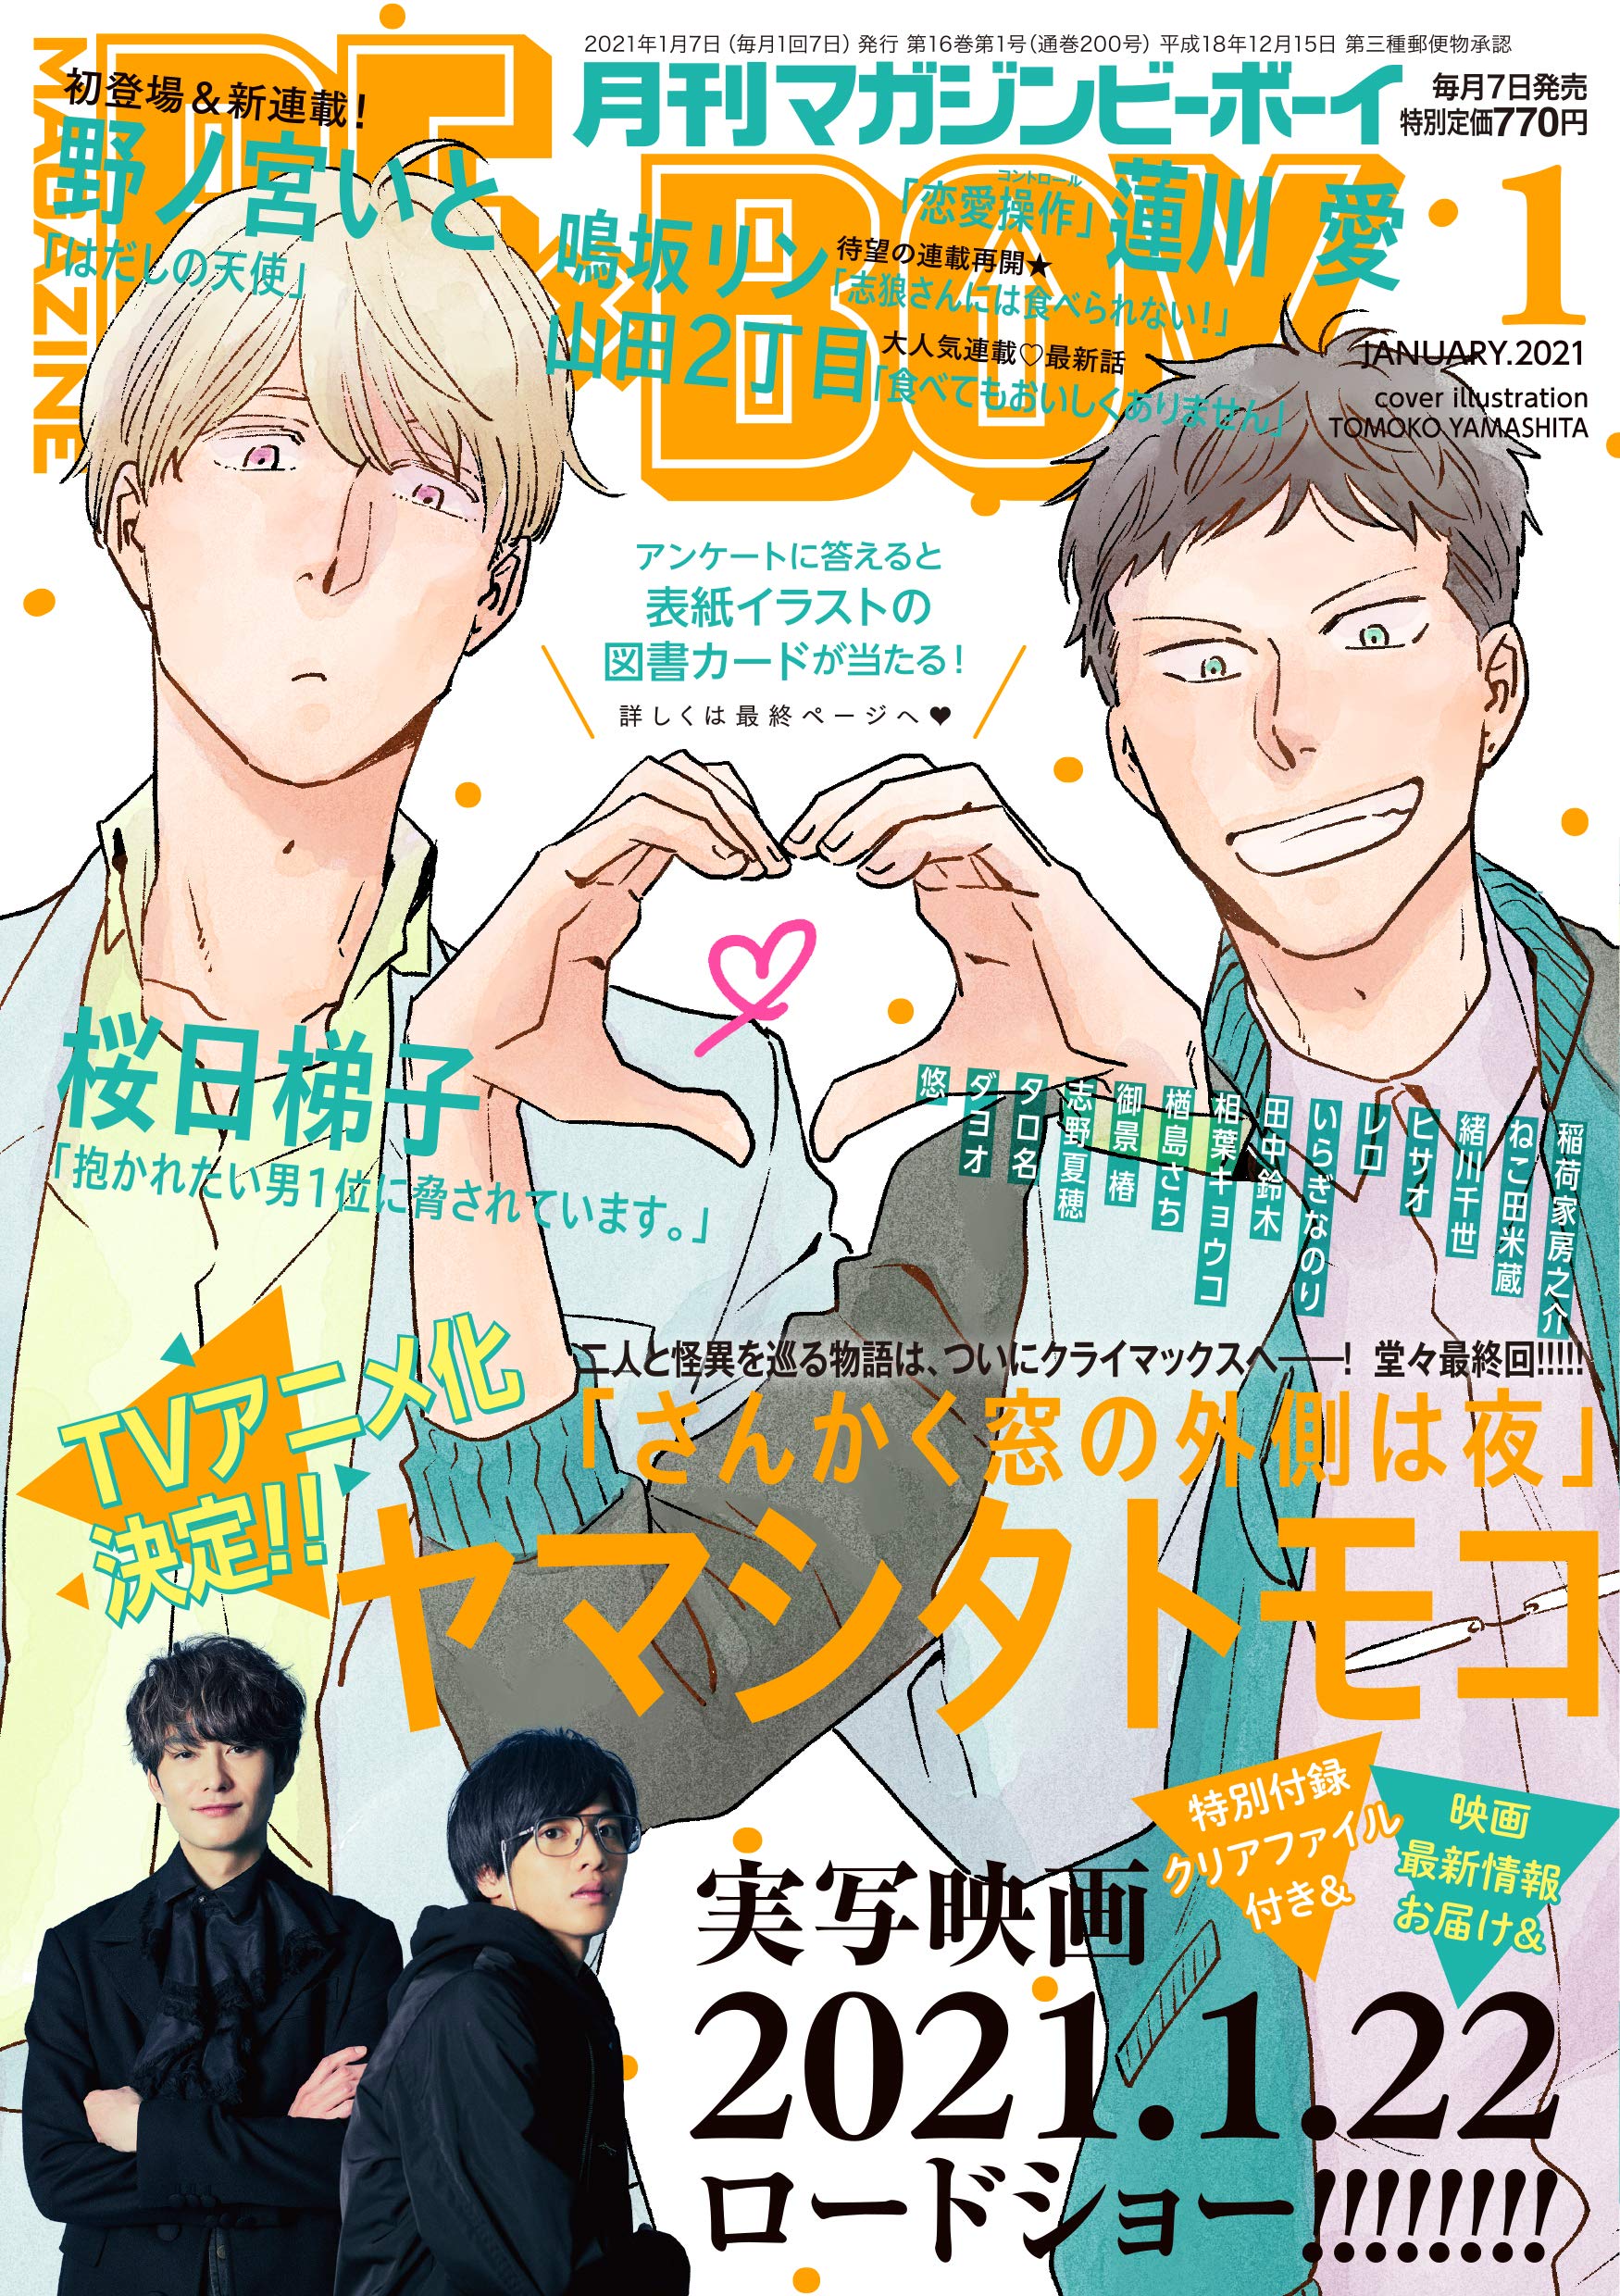 Boys Love (Yaoi) Magazine - MAGAZINE BE×BOY (MAGAZINE BE×BOY (マガジンビーボーイ) 2021年01月号 [雑誌]) / Nekota Yonezou & Yamashita Tomoko & Hasukawa Ai & Tanaka Suzuki & Shino Natsuho